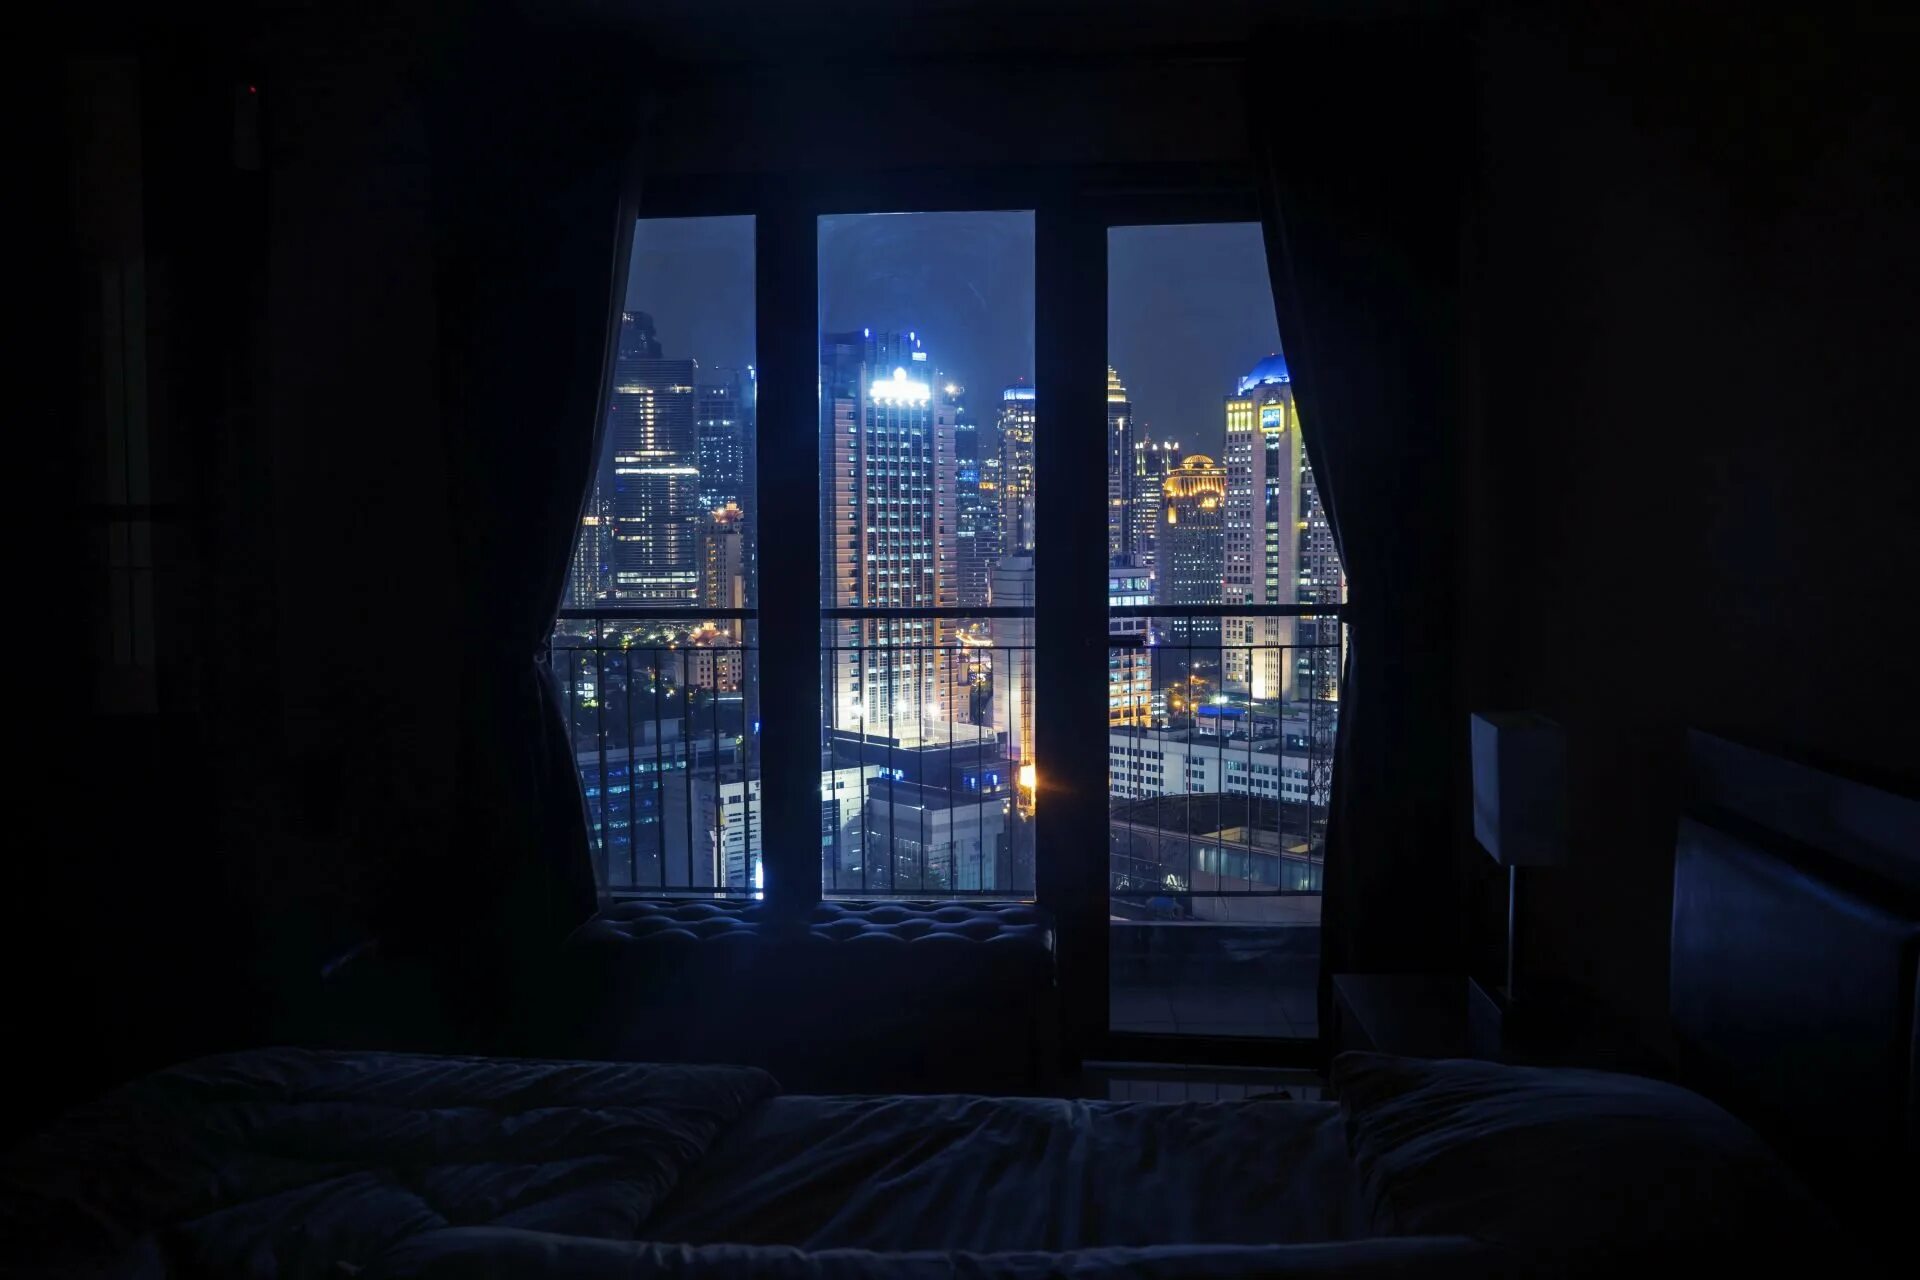 Комната с окном ночью. Ночное окно в комнате. Ночная комната с кроватью у окна. Ночной вид из окна. Квартира в темноте